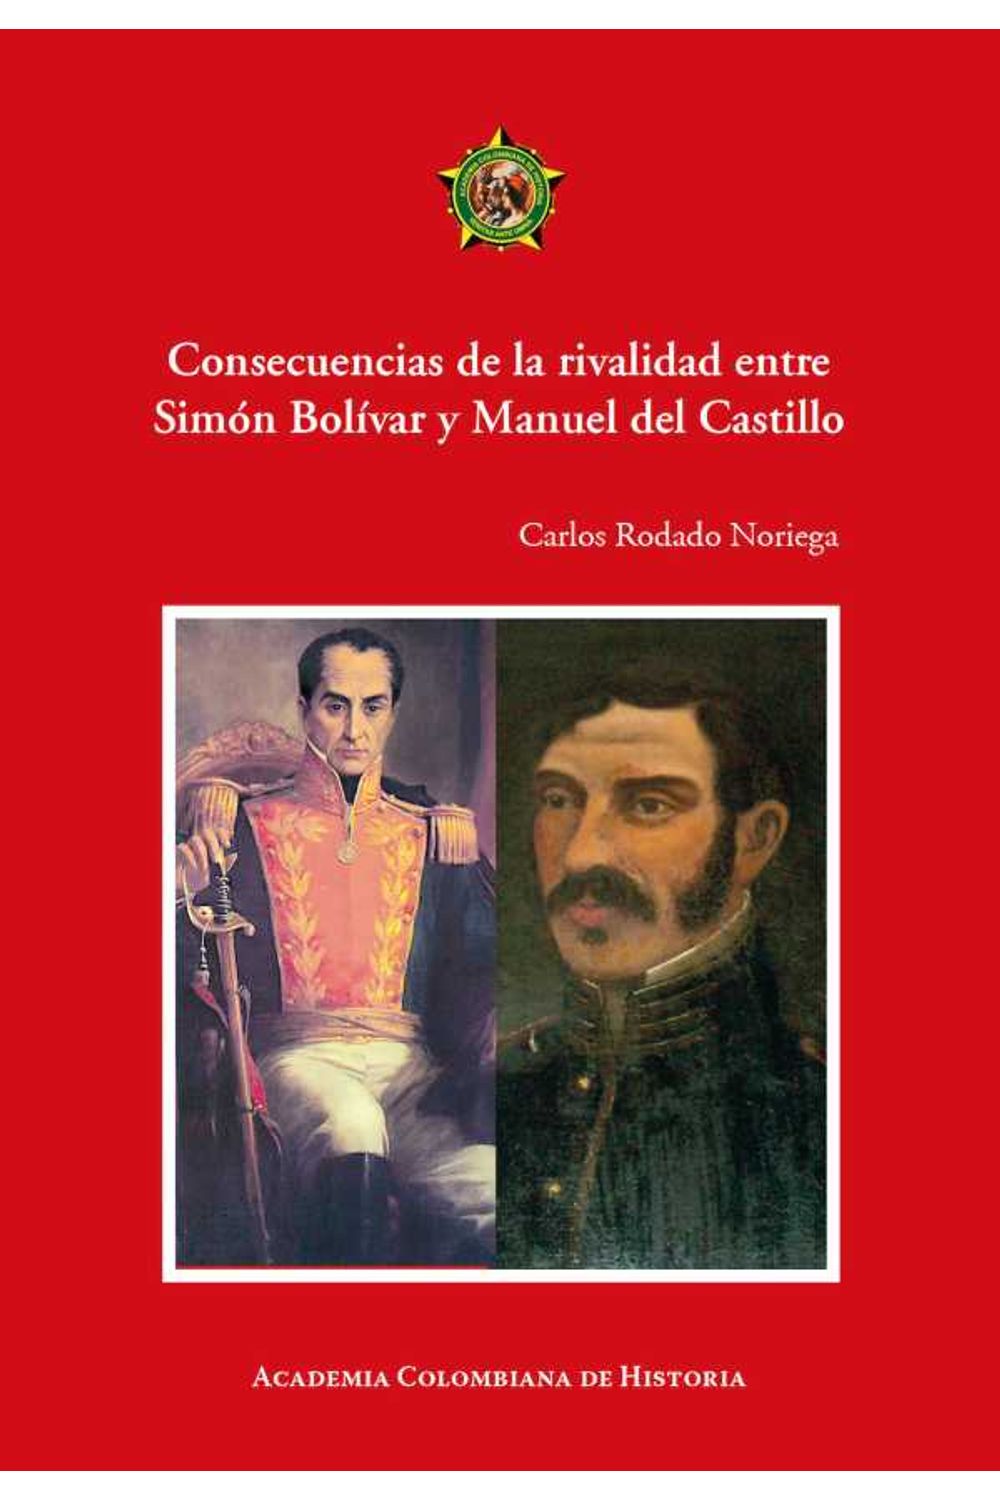 bw-consecuencias-de-la-rivalidad-entre-simoacuten-boliacutevar-y-manuel-del-castillo-academia-colombiana-de-historia-9789585154254